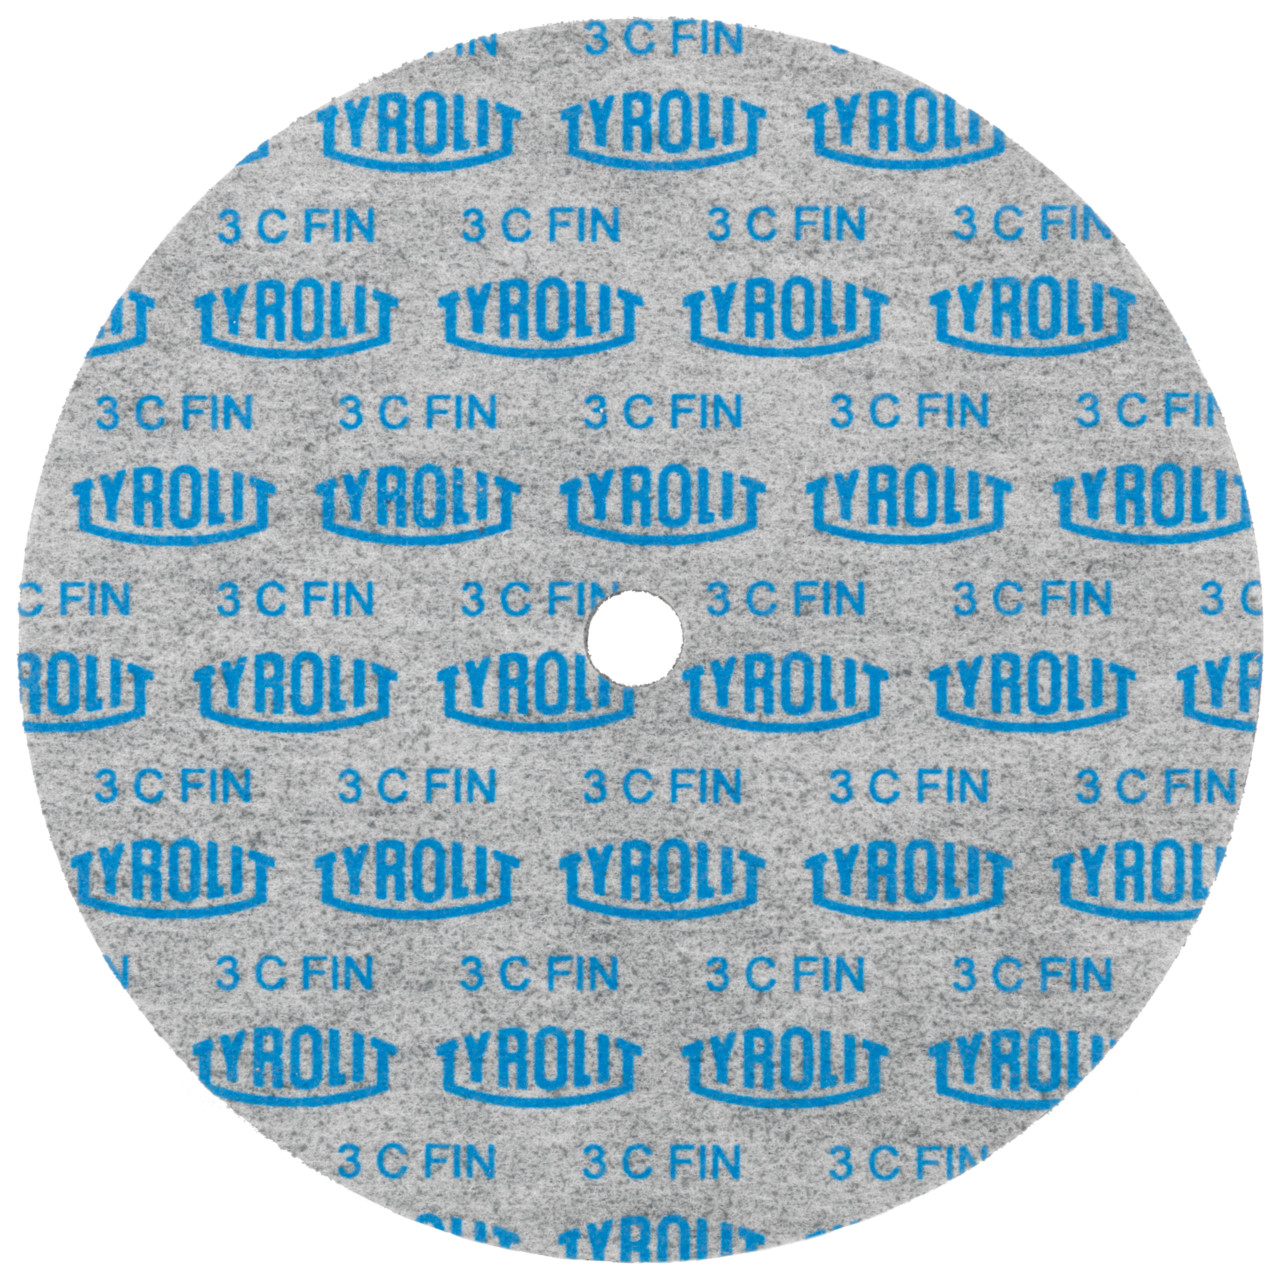 Tyrolit Discos compactos prensados DxDxH 152x6x12,7 Inserción universal, 3 C FEIN, forma: 1, Art. 34190236